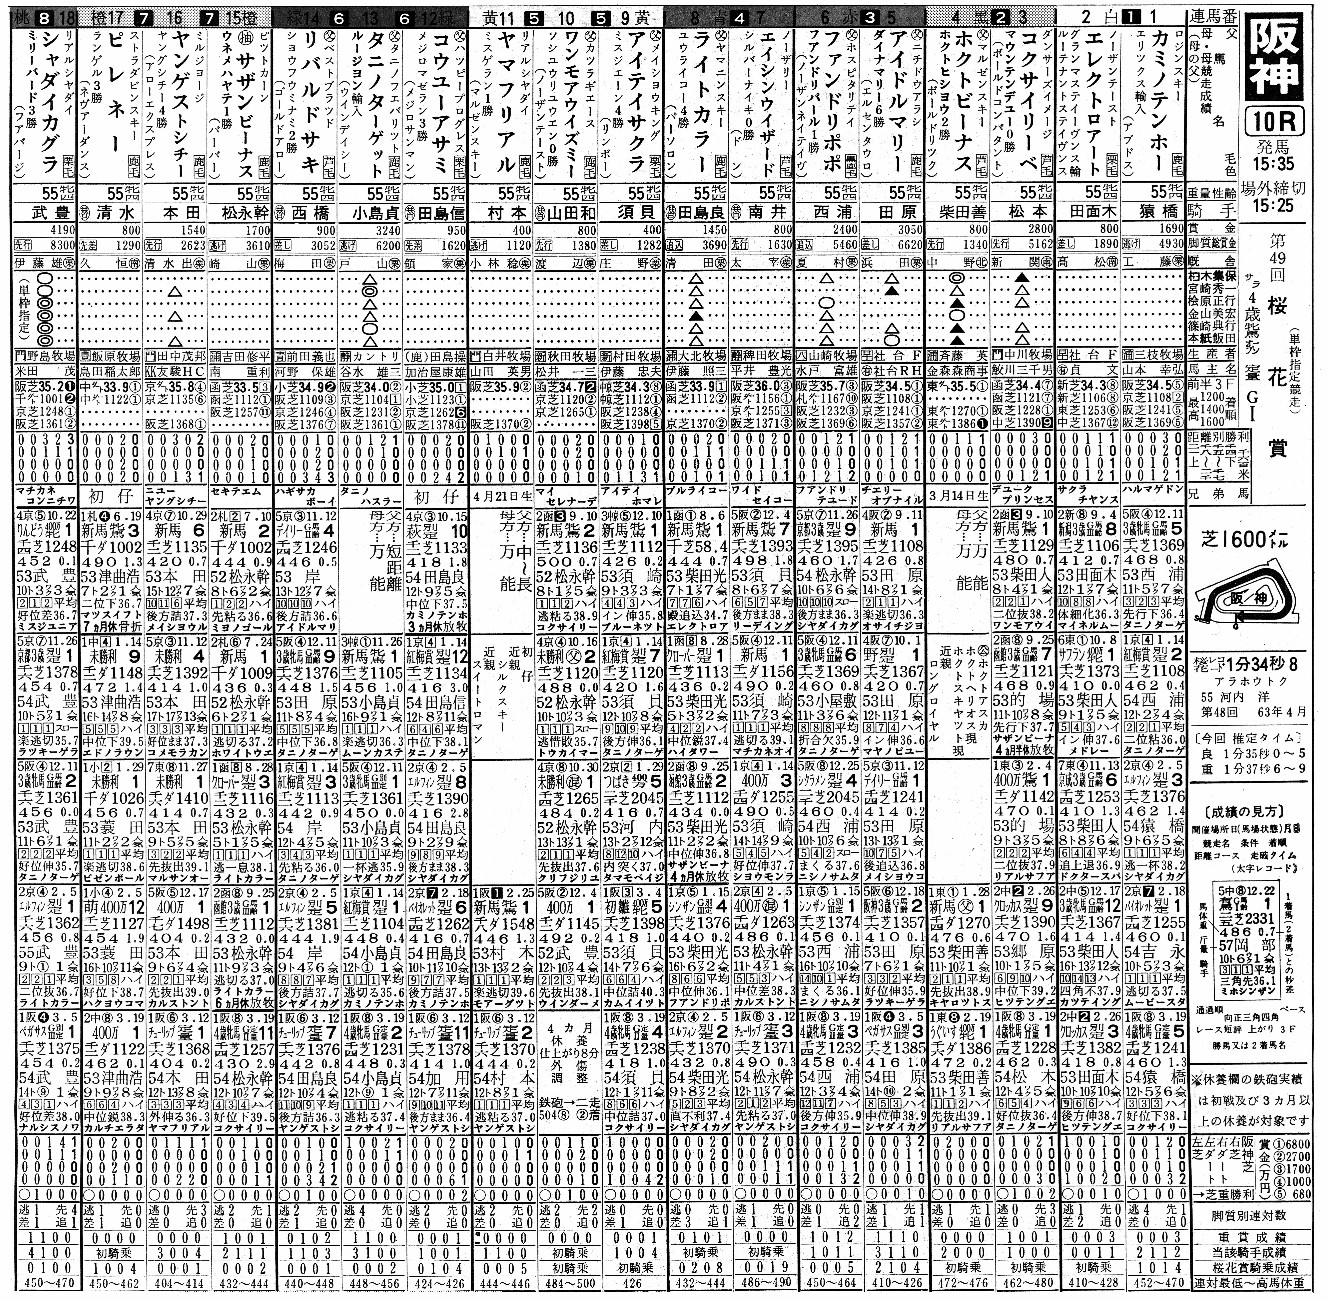 １９８９桜花賞　単枠指定のシャダイカグラ